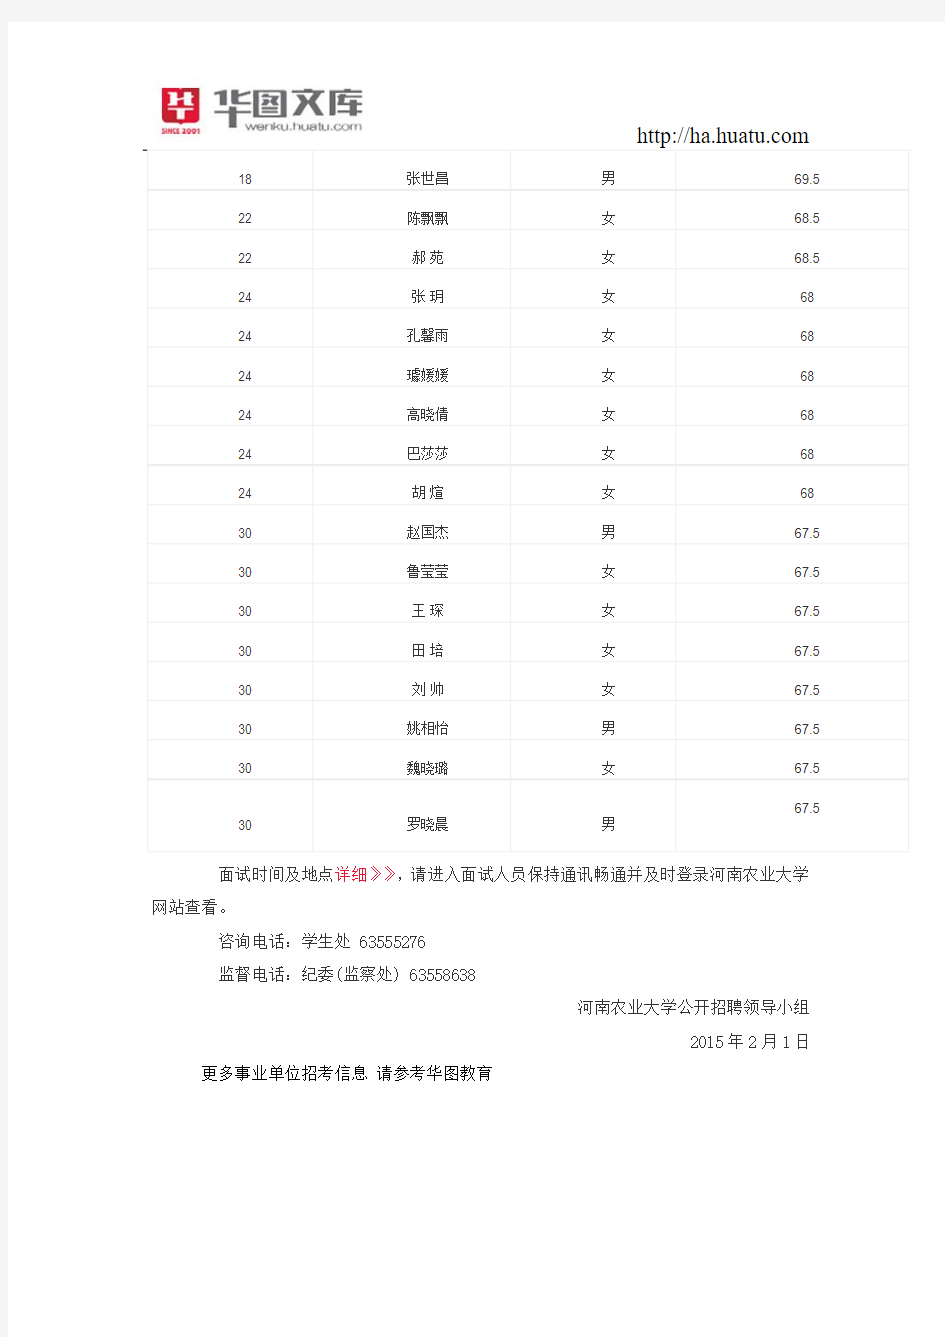 2014河南农业大学招聘辅导员面试名单及笔试成绩公示